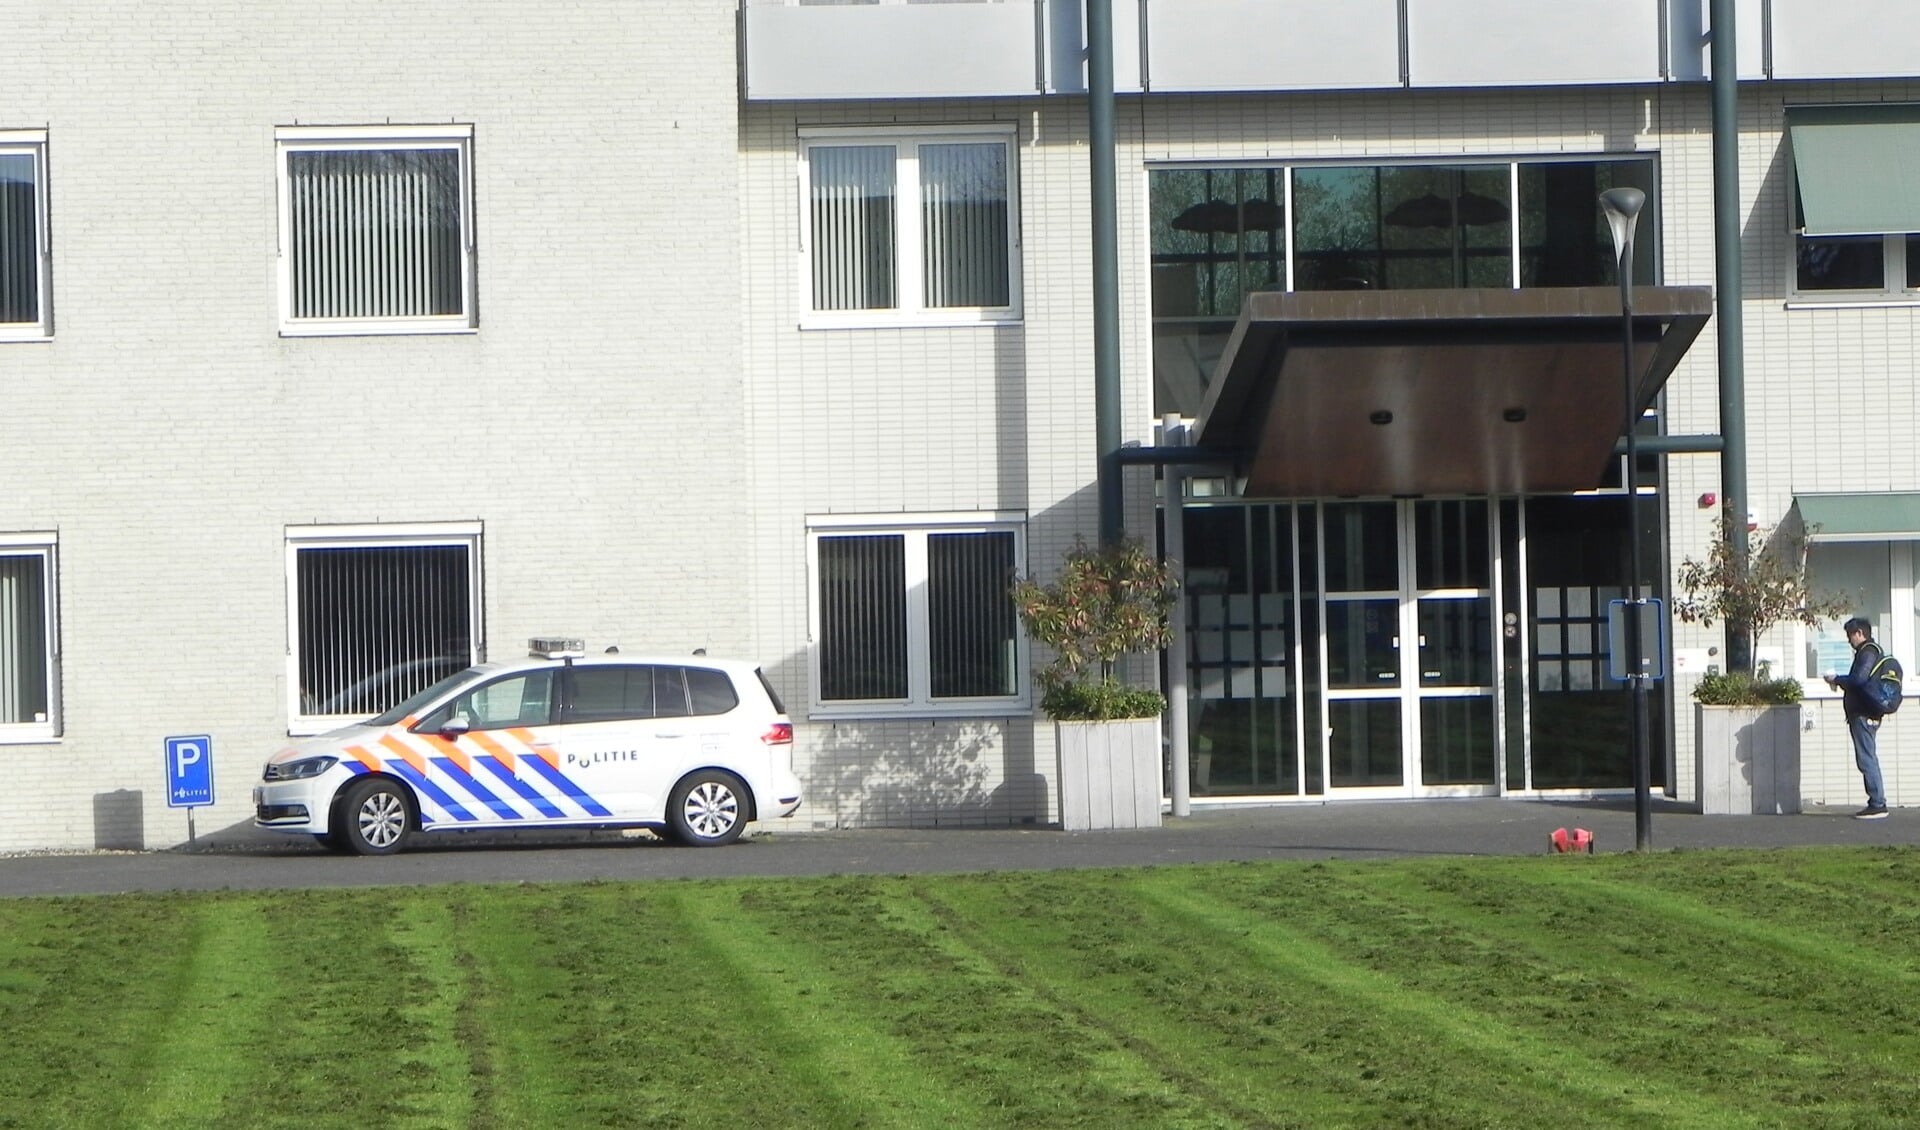 Het gemeentehuis in Odijk waar ook de politie is gehuisvest